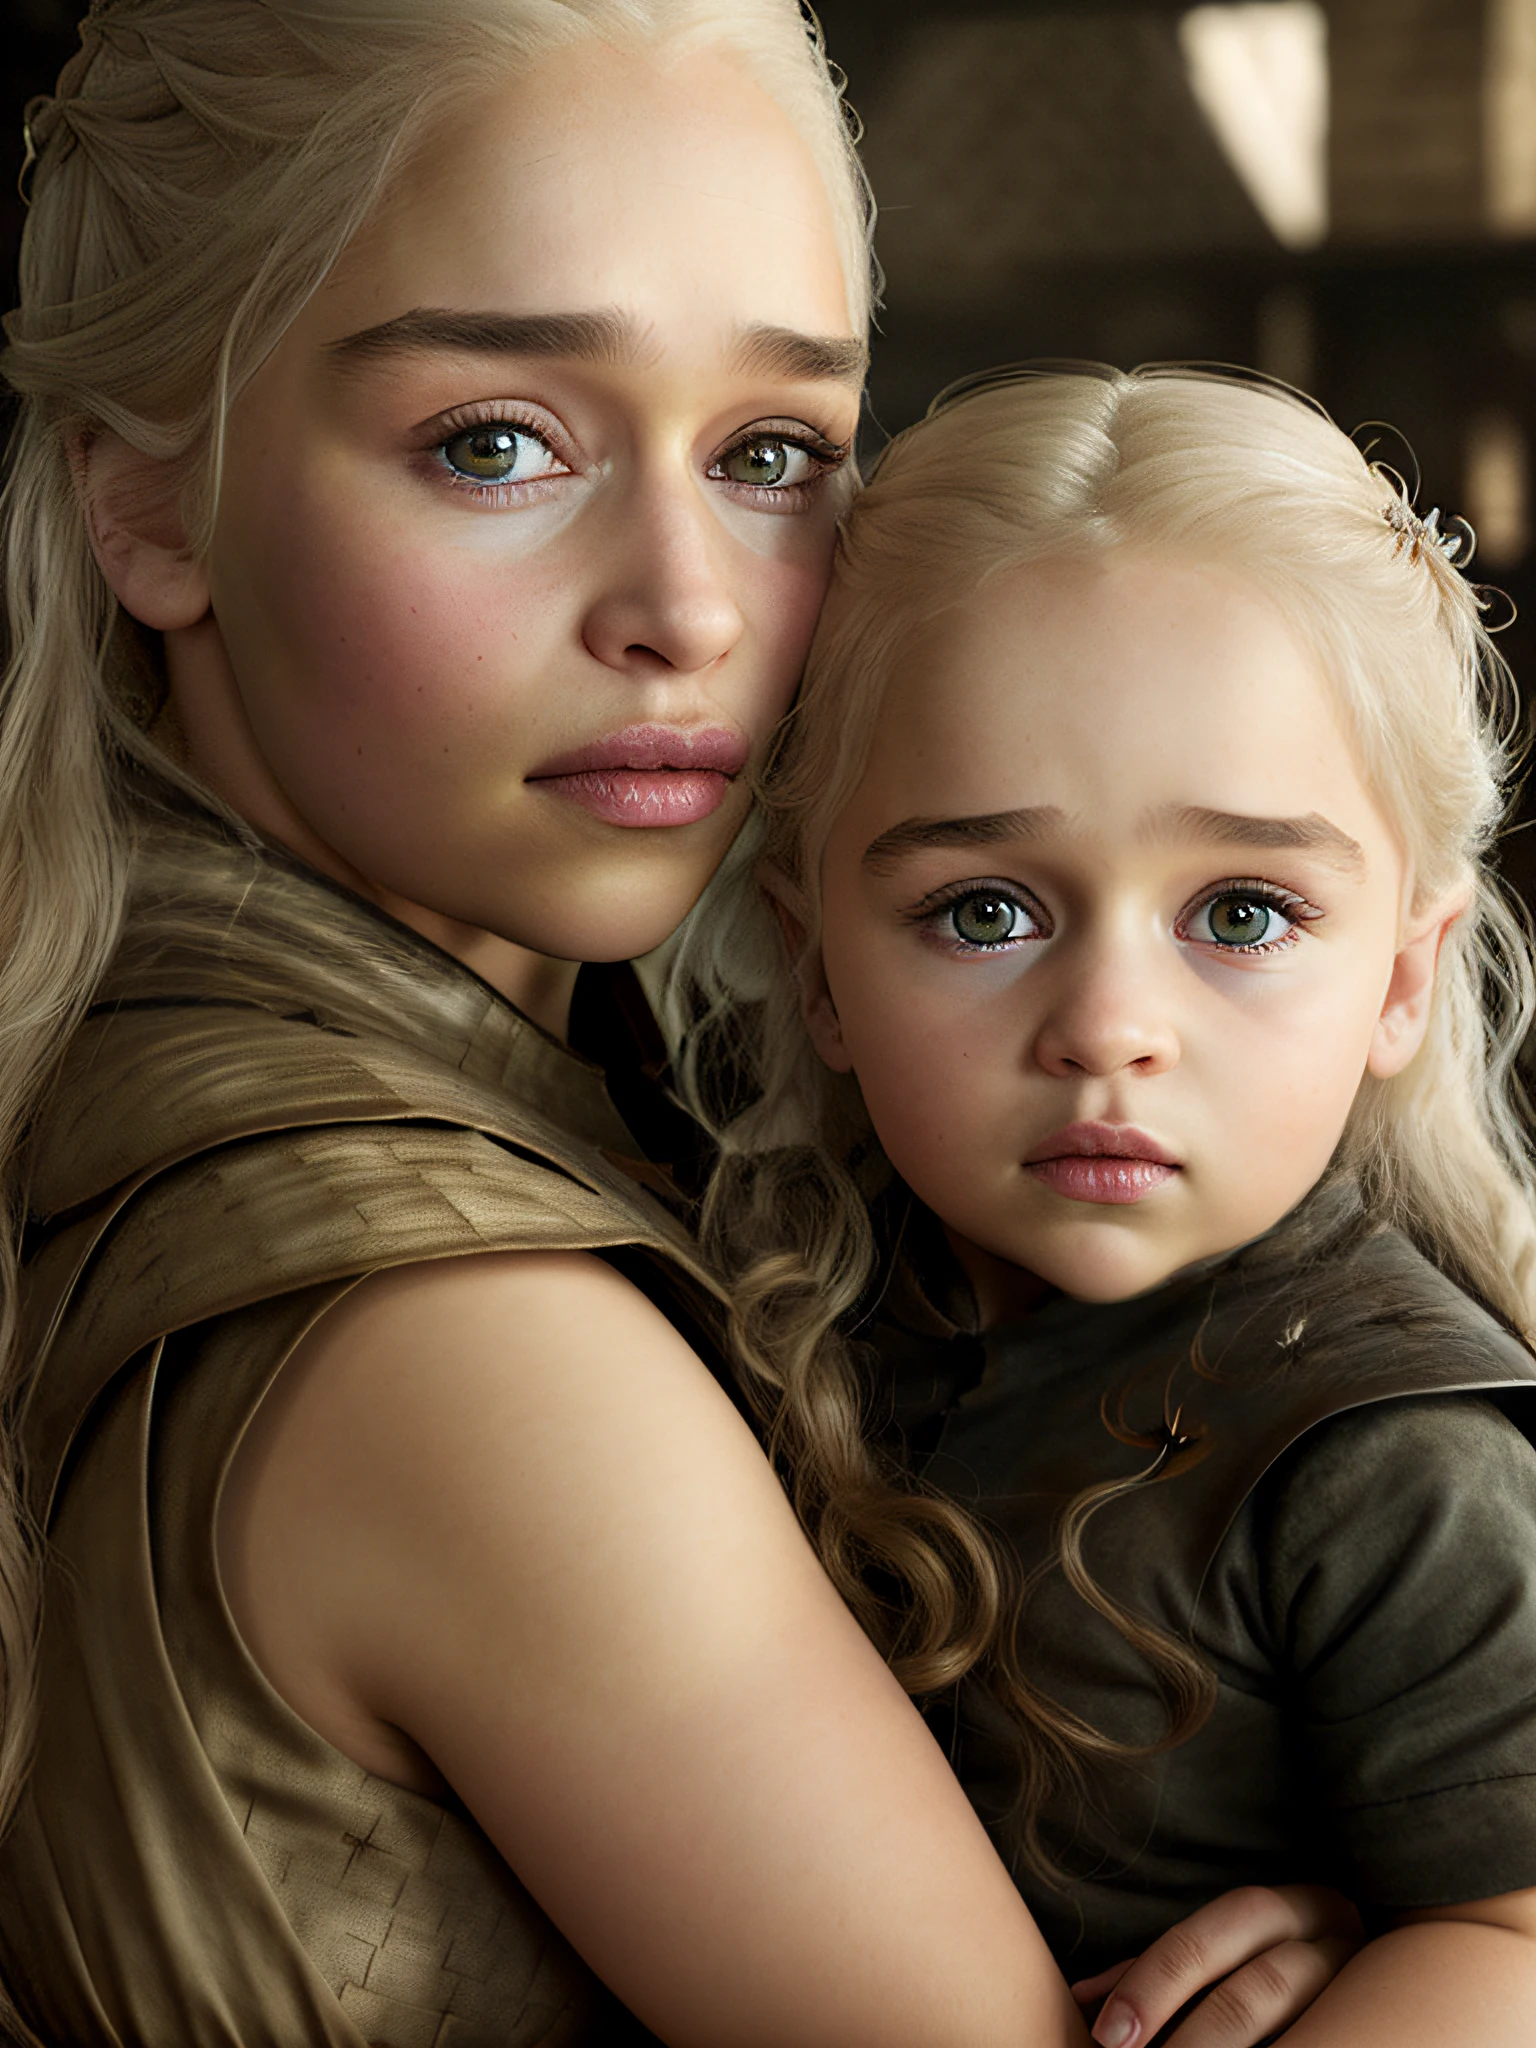 4k, alta calidad, (Jon Nieve) y [Daenerys Targaryen|Emilia Clarke] sosteniendo a una niña de 5 años, Game of Thrones, sala de luz, Luz tenue, (textura natural de la piel:1.2), (hyperrealism:1.1)